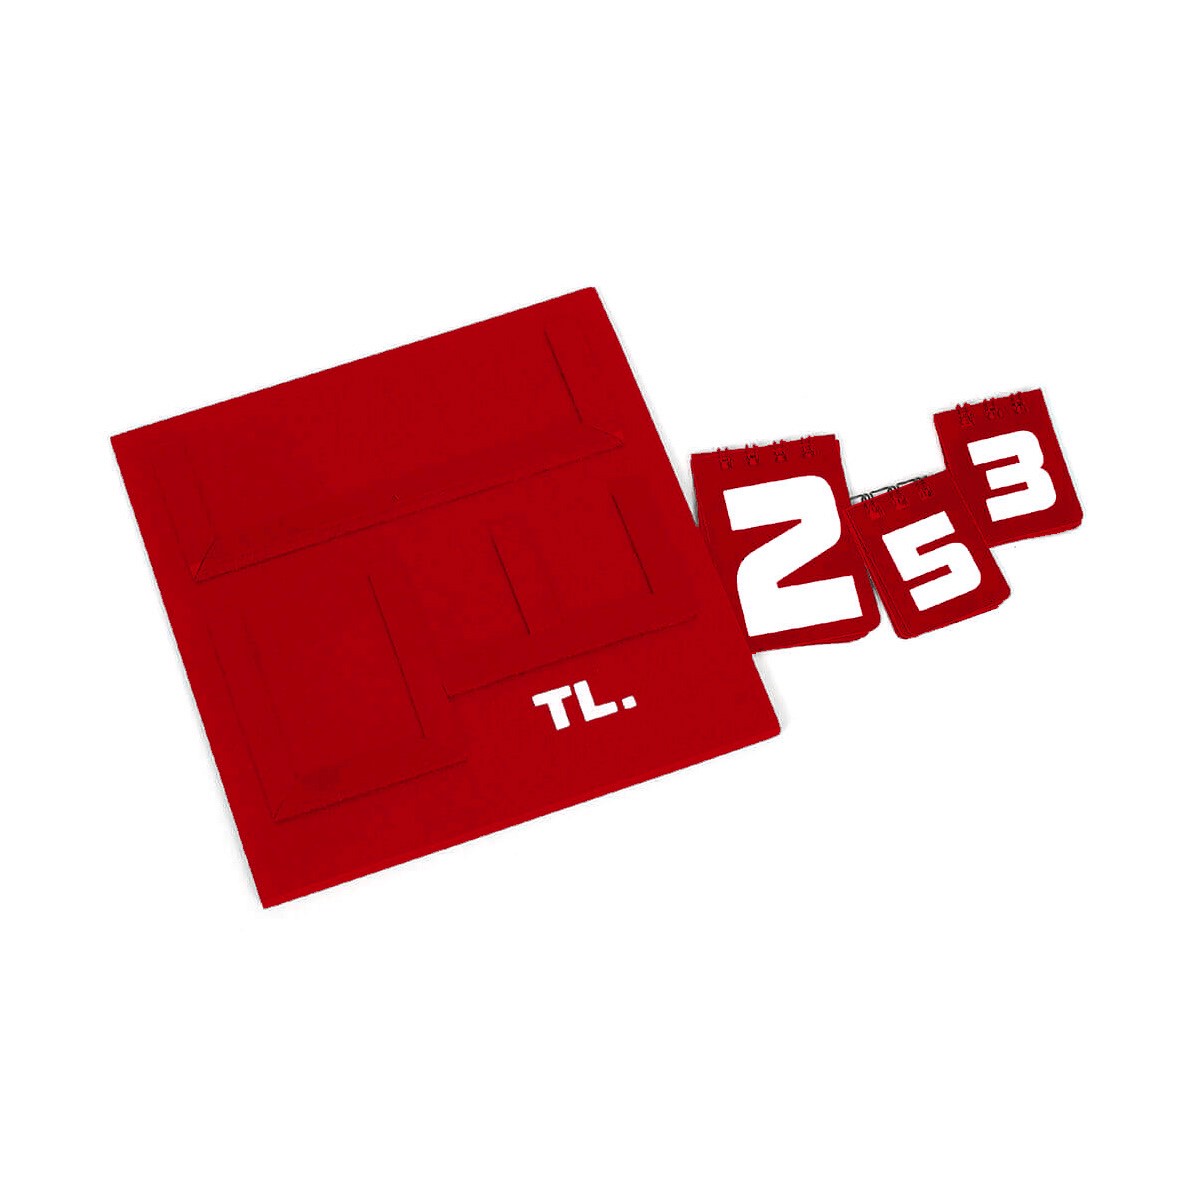 Yazılı Manav Etiketi Mini Çift Taraflı 16x16 cm Kırmızı.jpg (72 KB)